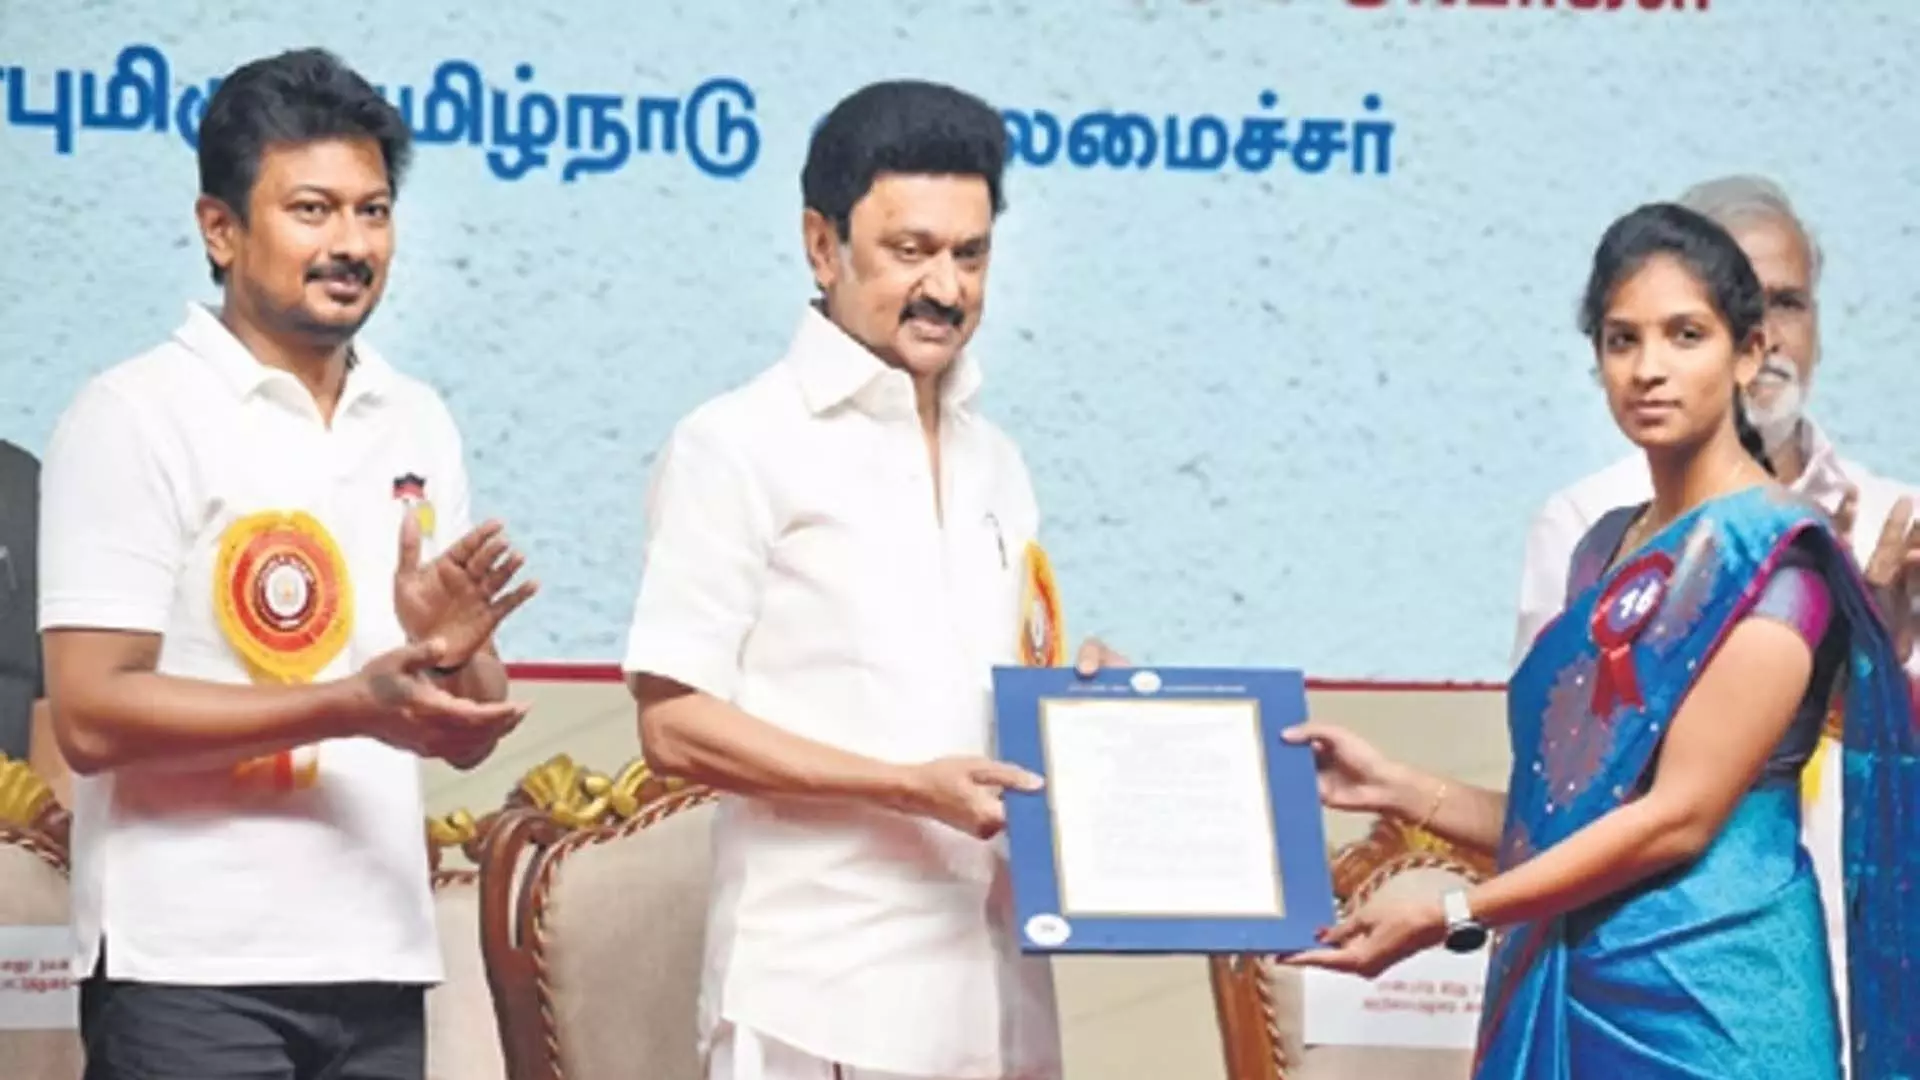 Tamil Nadu: 1,598 को नौकरी के ऑर्डर मिले, सीएम ने कहा- दो साल में 50 हजार रिक्तियां भरी जाएंगी